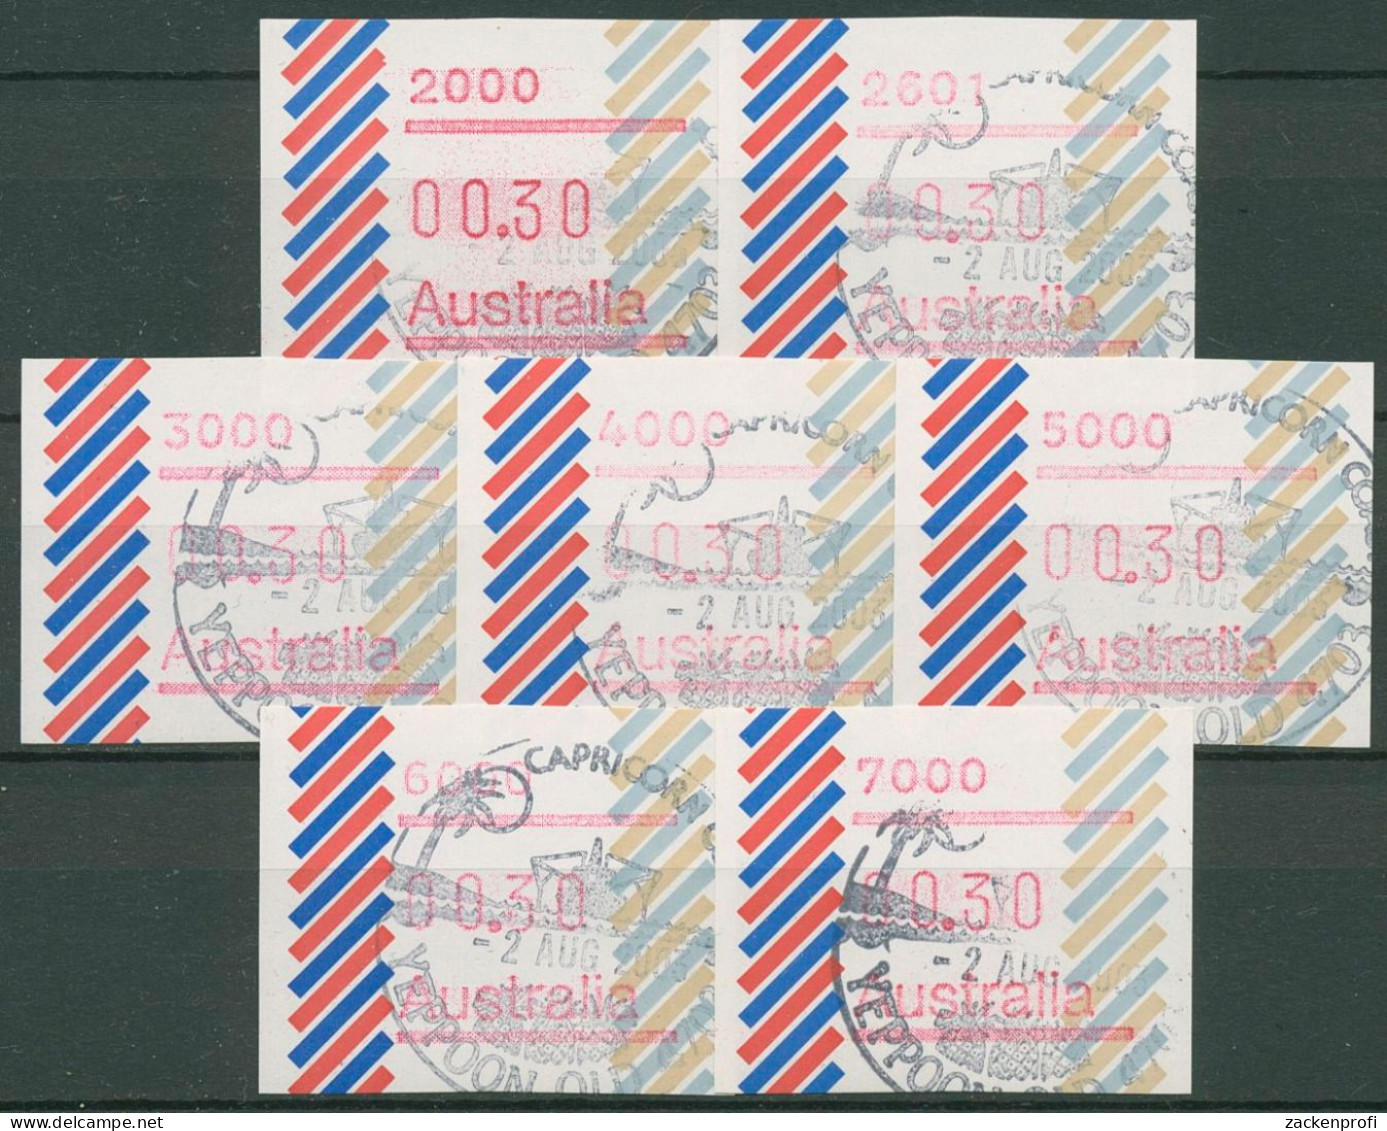 Australien 1984 Balken PO-Set (7) Automatenmarke 1 Gestempelt - Vignette [ATM]